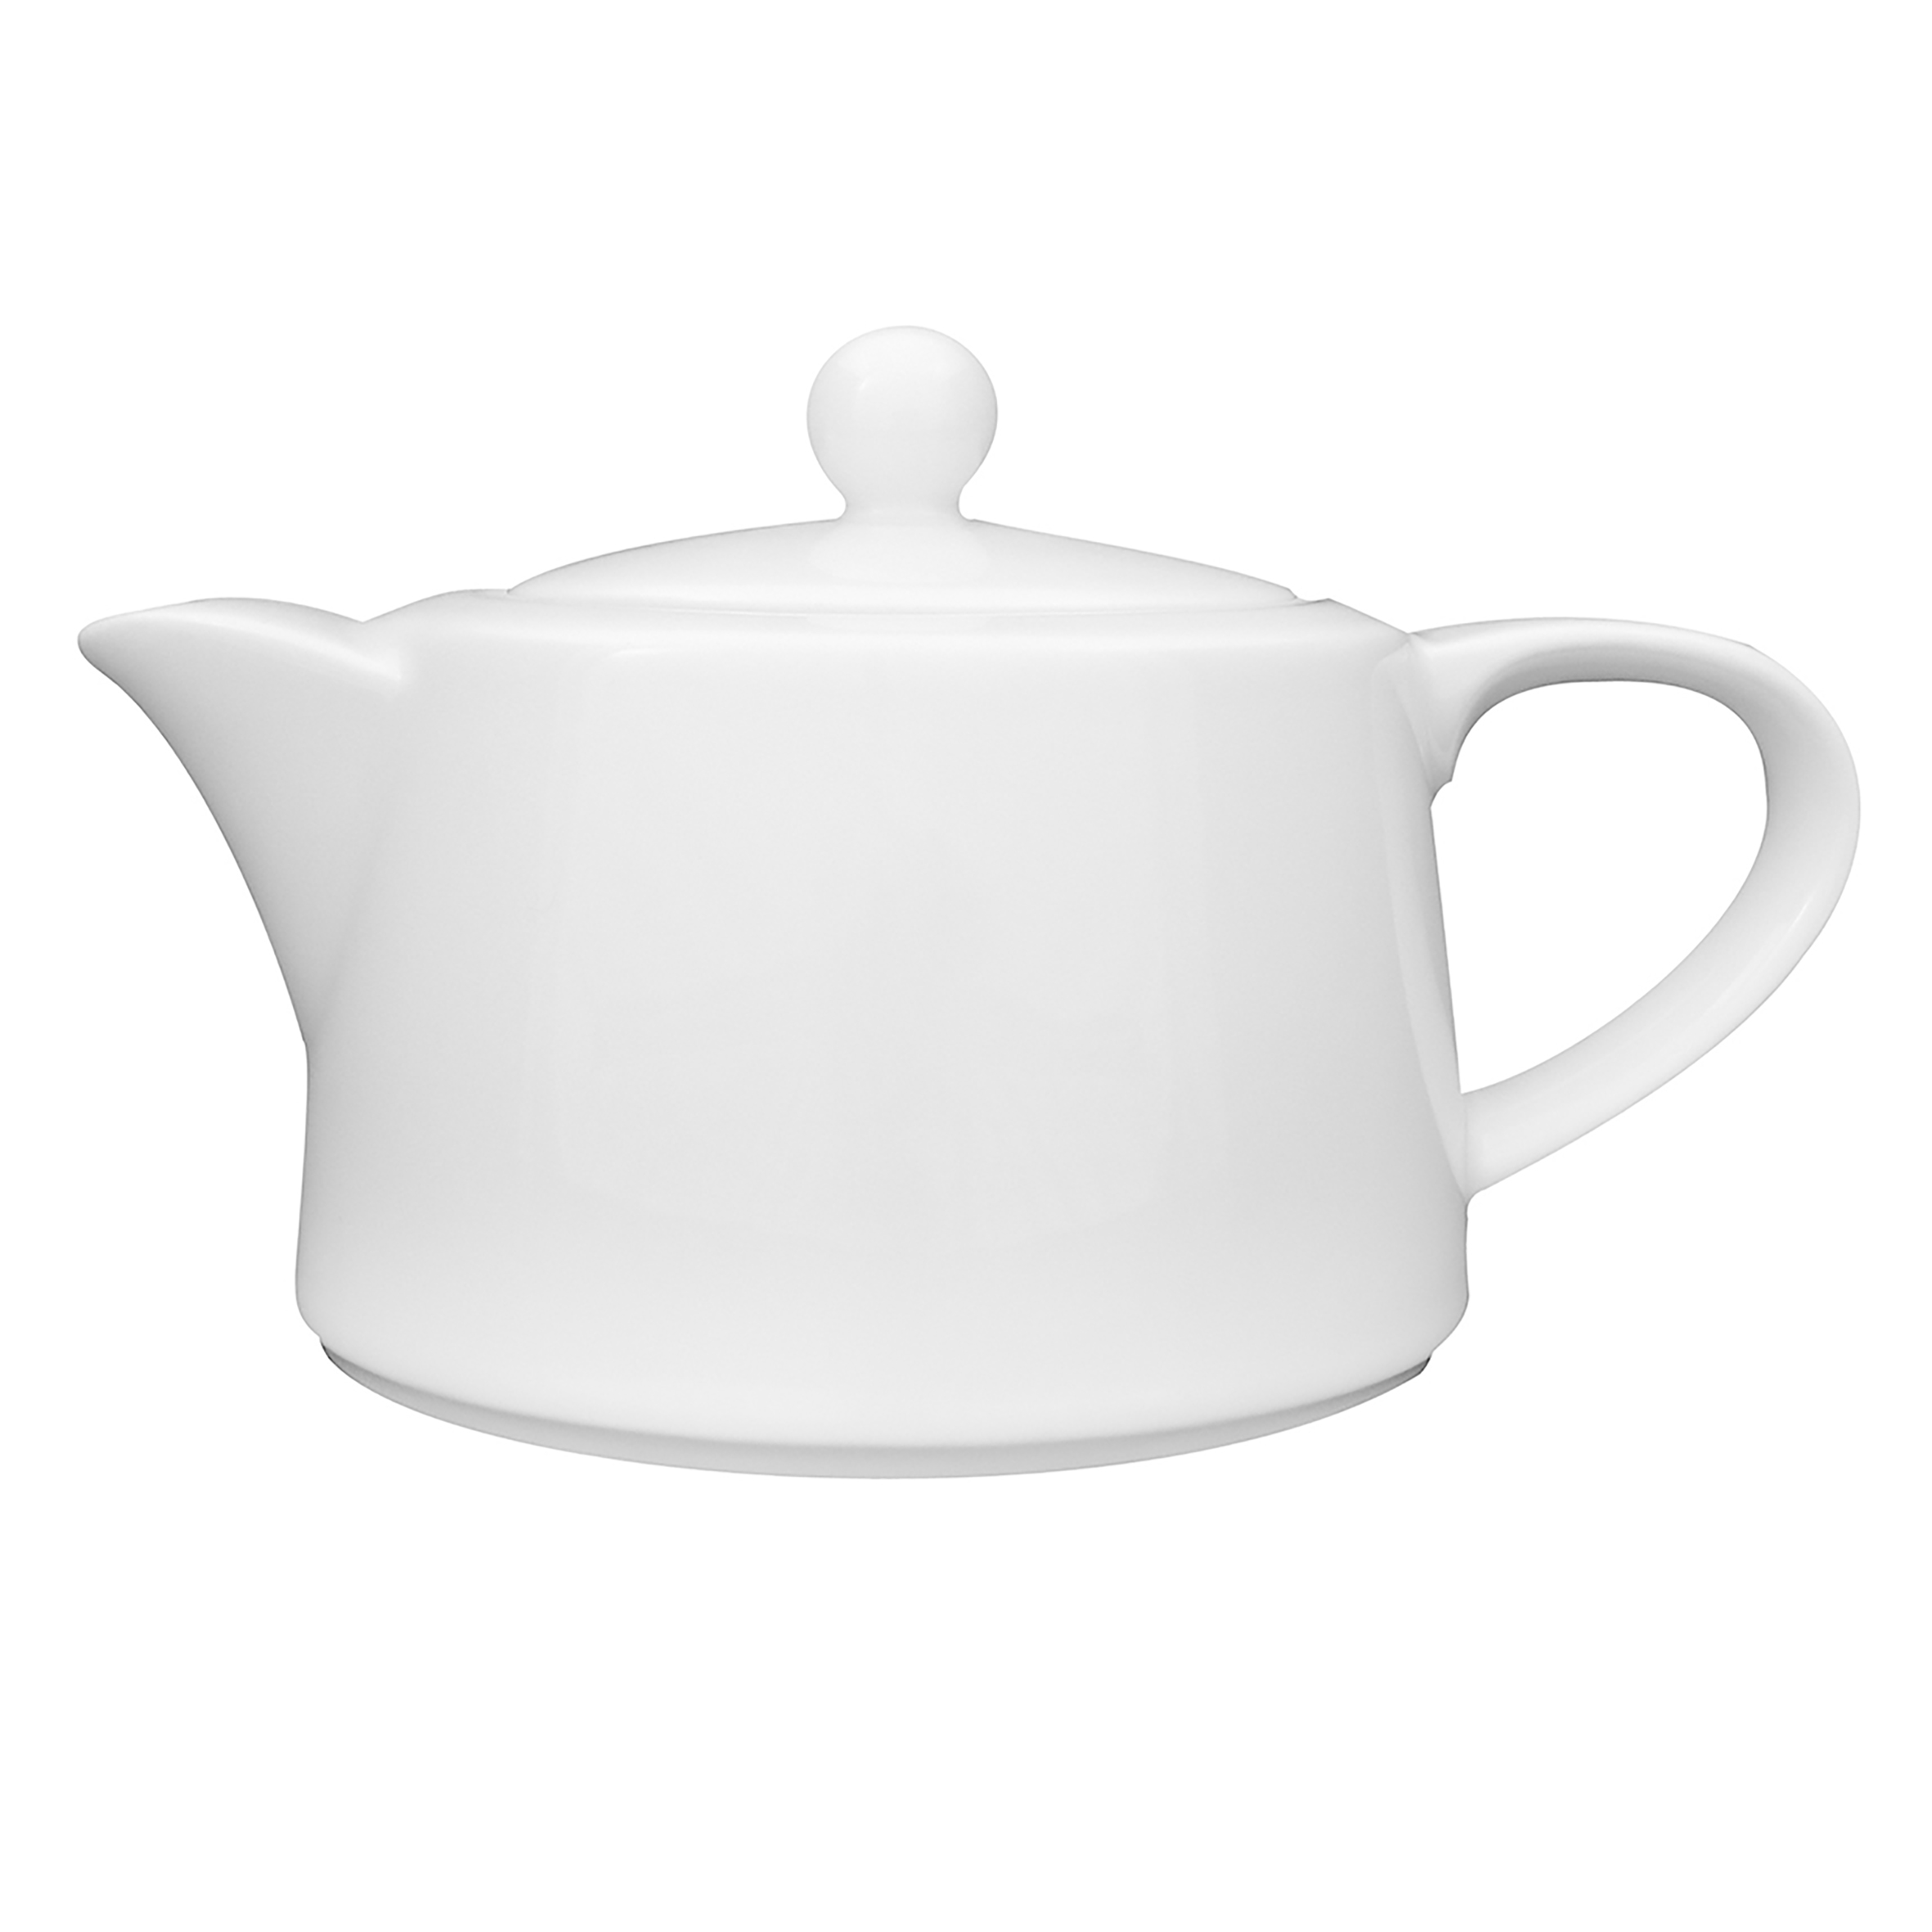 Teekanne mit Deckel - Inhalt 0,40 ltr - Form PRIMAVERA - uni weiß